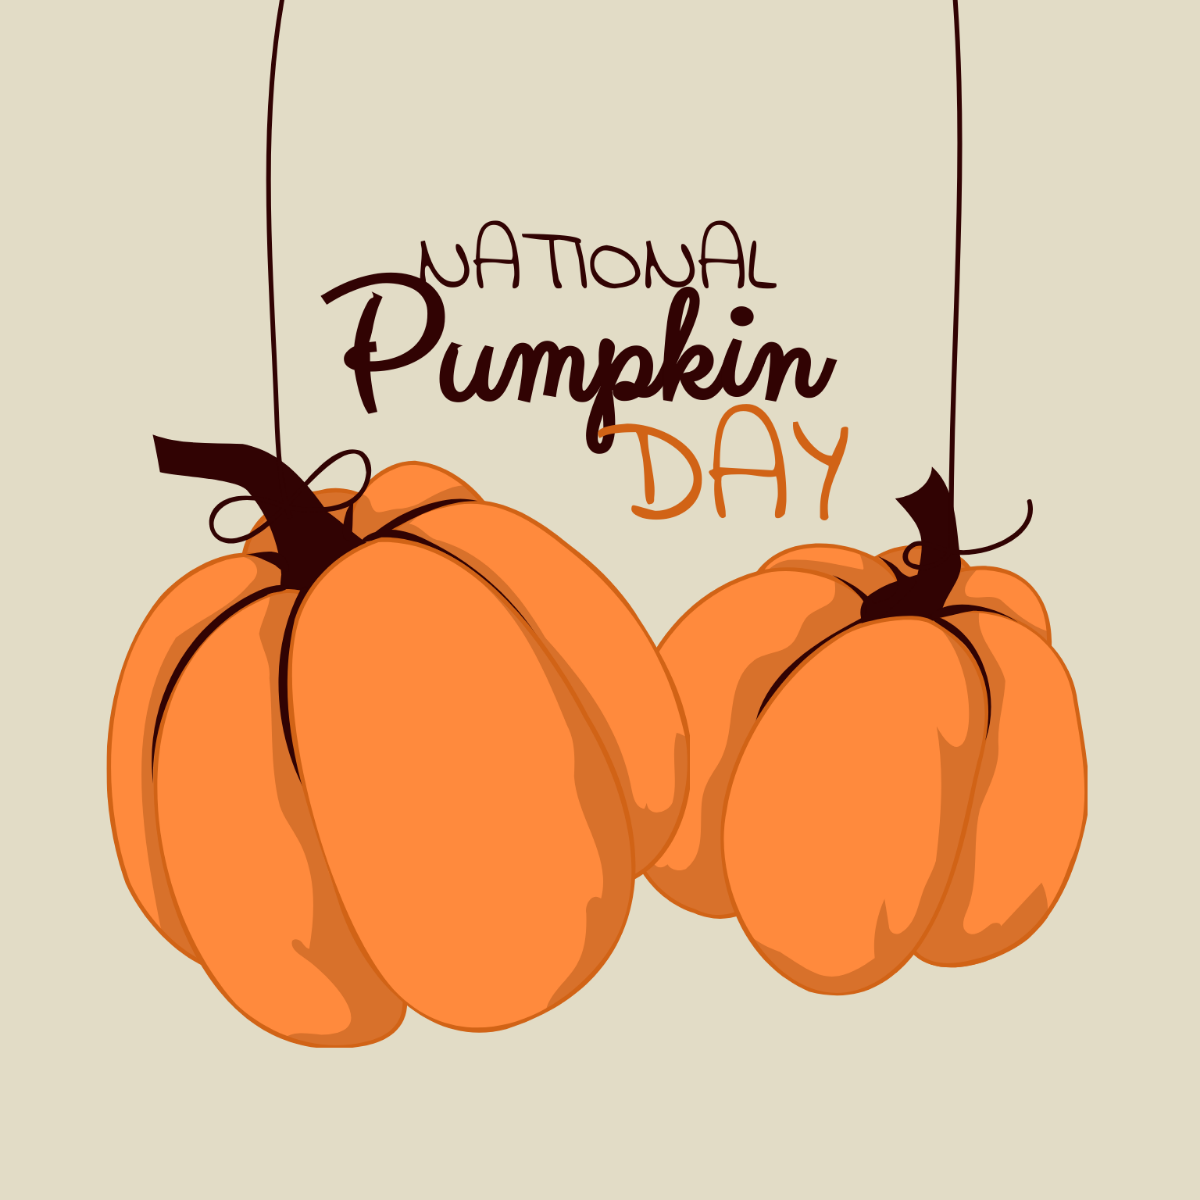 National Pumpkin Day Vector